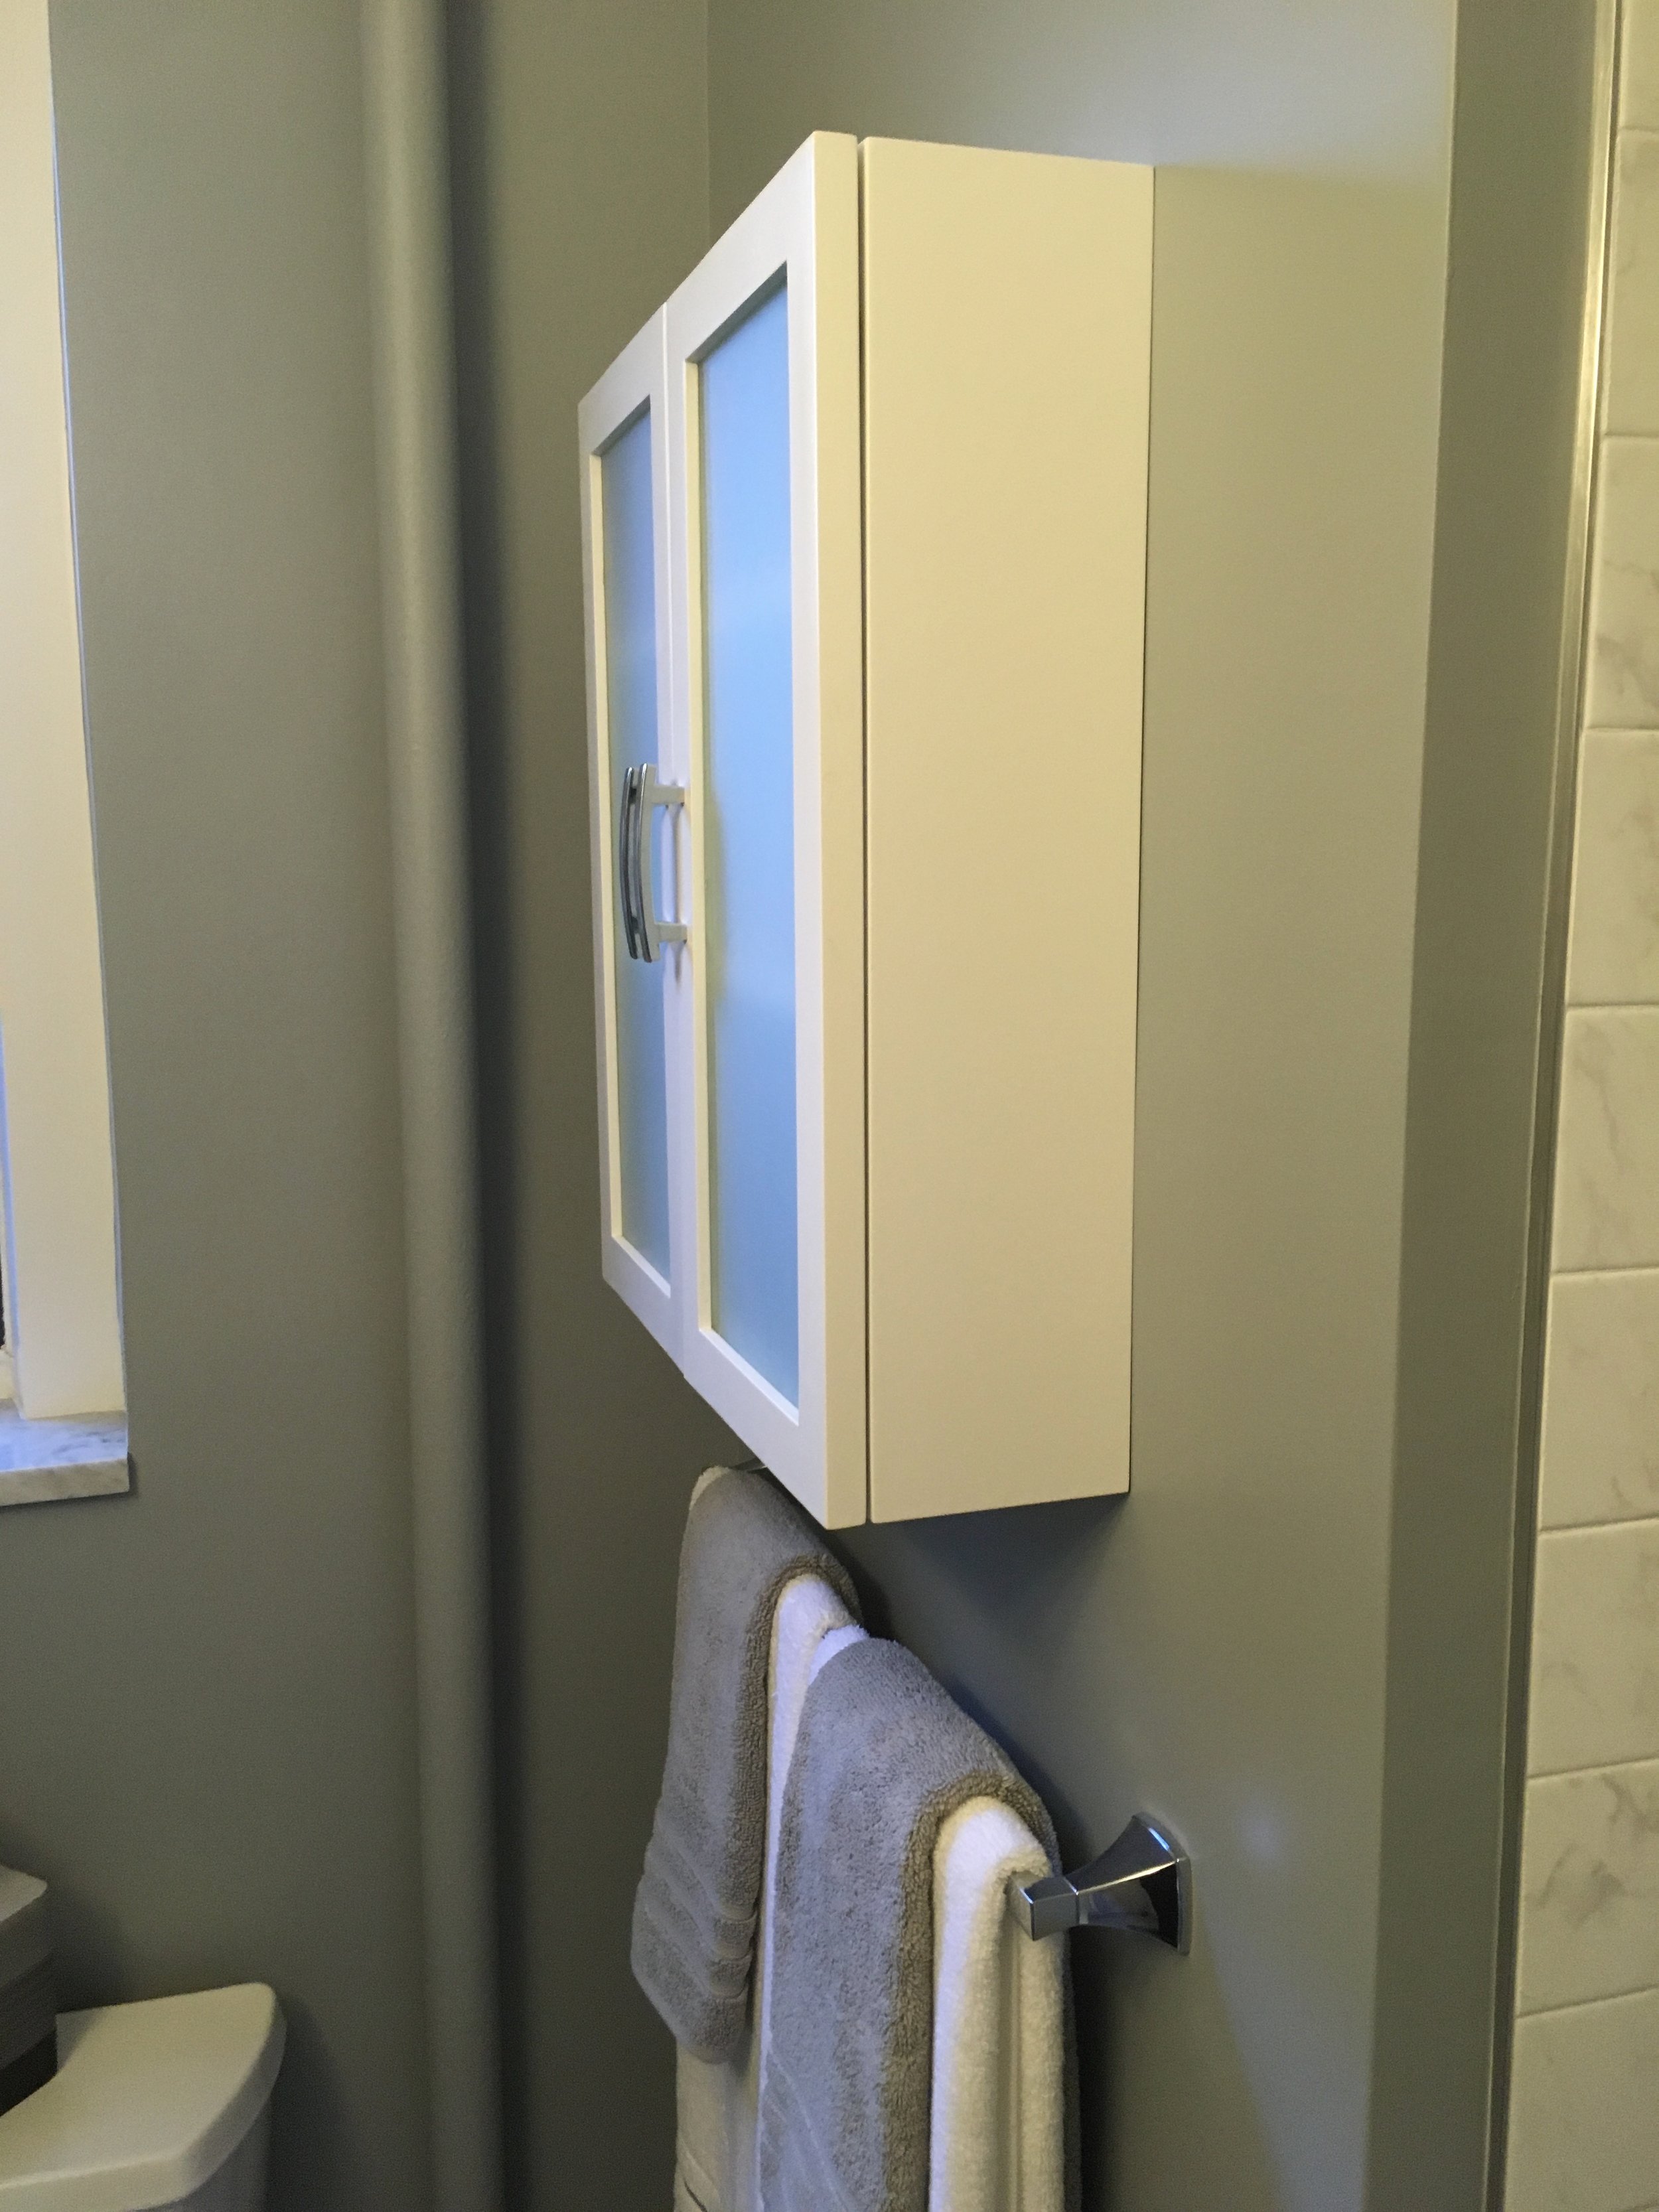 BUILDINWOOD Inwood Bathroom Remodel:  Licensed&Fully Insured Contractor